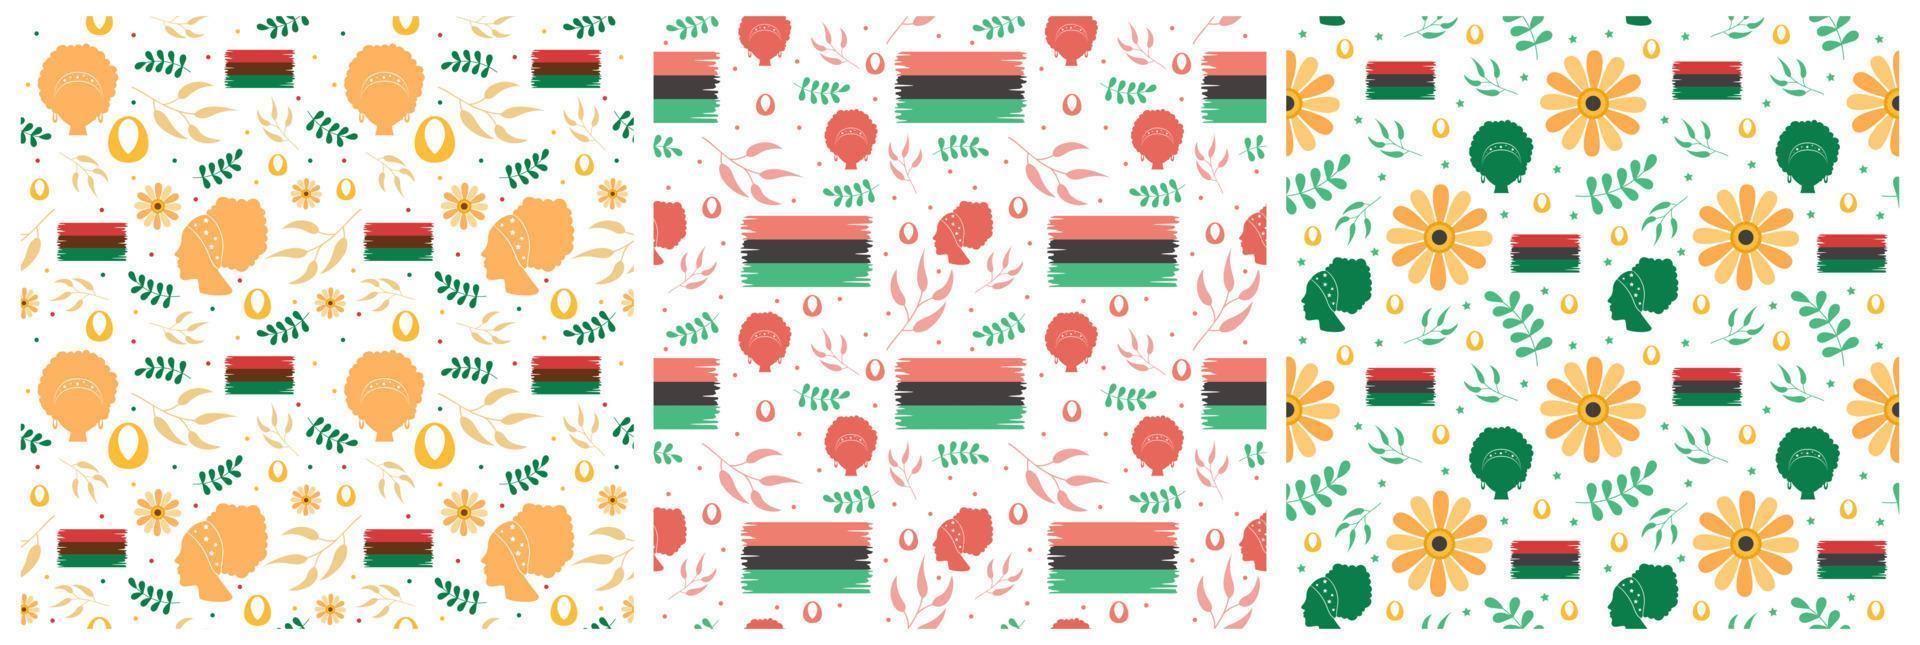 conjunto de feliz kwanzaa vacaciones diseño de patrones sin fisuras africanos con elemento de estilo festival en plantilla ilustración plana de dibujos animados dibujados a mano vector